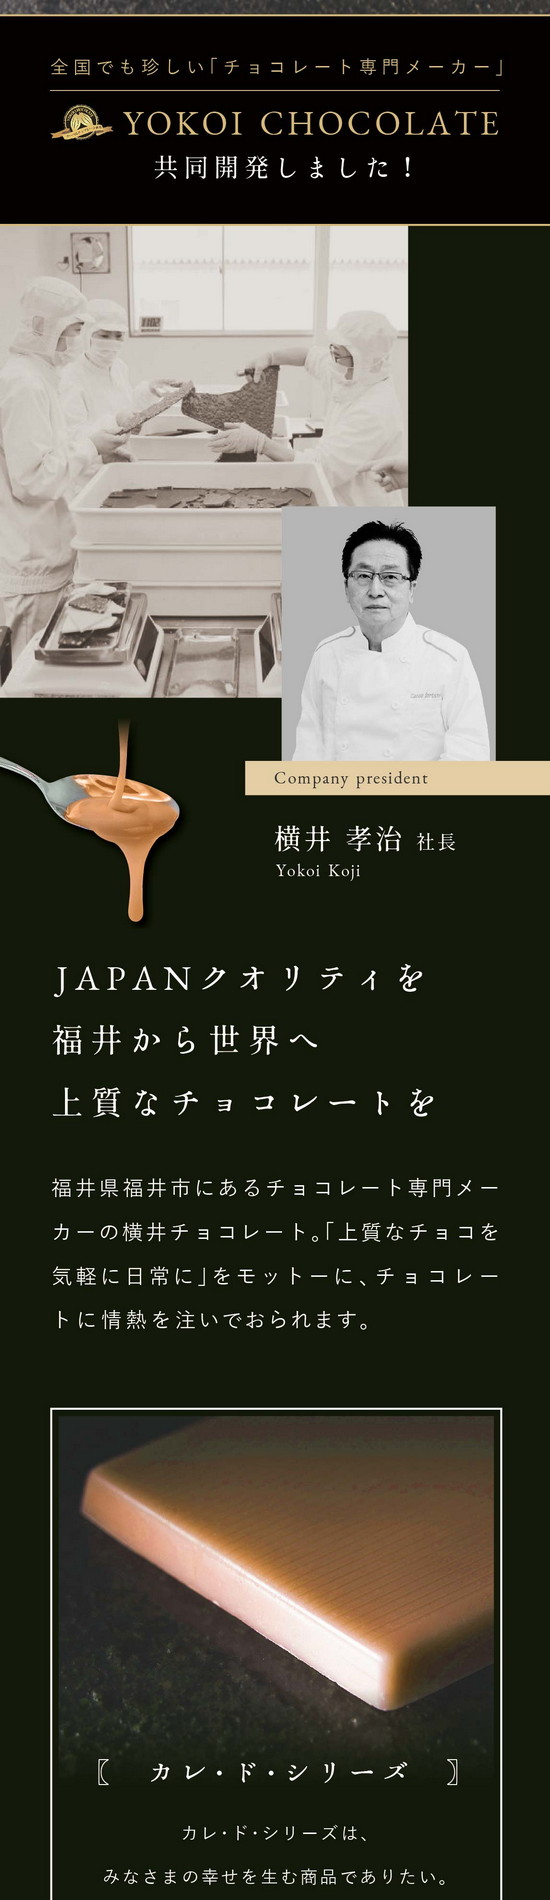 横井チョコレートと共同開発。JAPENクオリティを福井から世界へ上質なチョコレートを。福井県福井市にあるチョコレート専門メーカーの横井チョコレート。「上質なチョコレートを気軽に日常に」をモットーに情熱を注いでおられます。カレ・ド・シリーズはみなさまの幸せを生む商品でありたい。特徴である四角（フランス語：Carre）は、チョコレートの風味・口どけが一番濃厚に感じられる形。そこに、幸せのカラーをかけ合わせています。